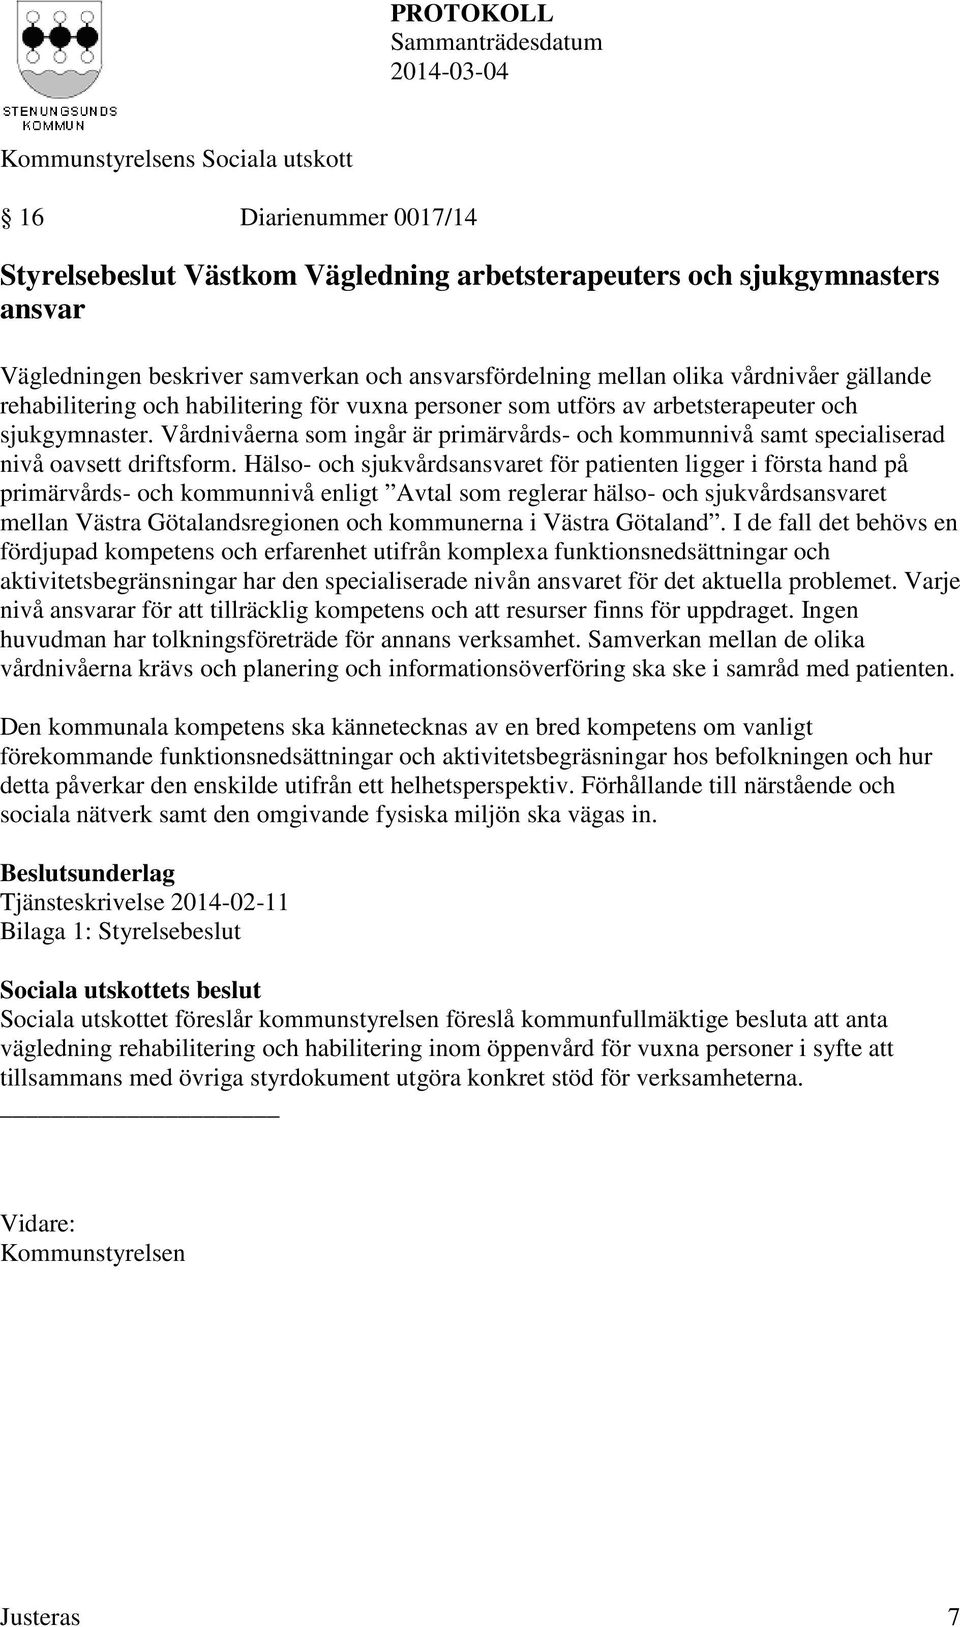 Hälso- och sjukvårdsansvaret för patienten ligger i första hand på primärvårds- och kommunnivå enligt Avtal som reglerar hälso- och sjukvårdsansvaret mellan Västra Götalandsregionen och kommunerna i